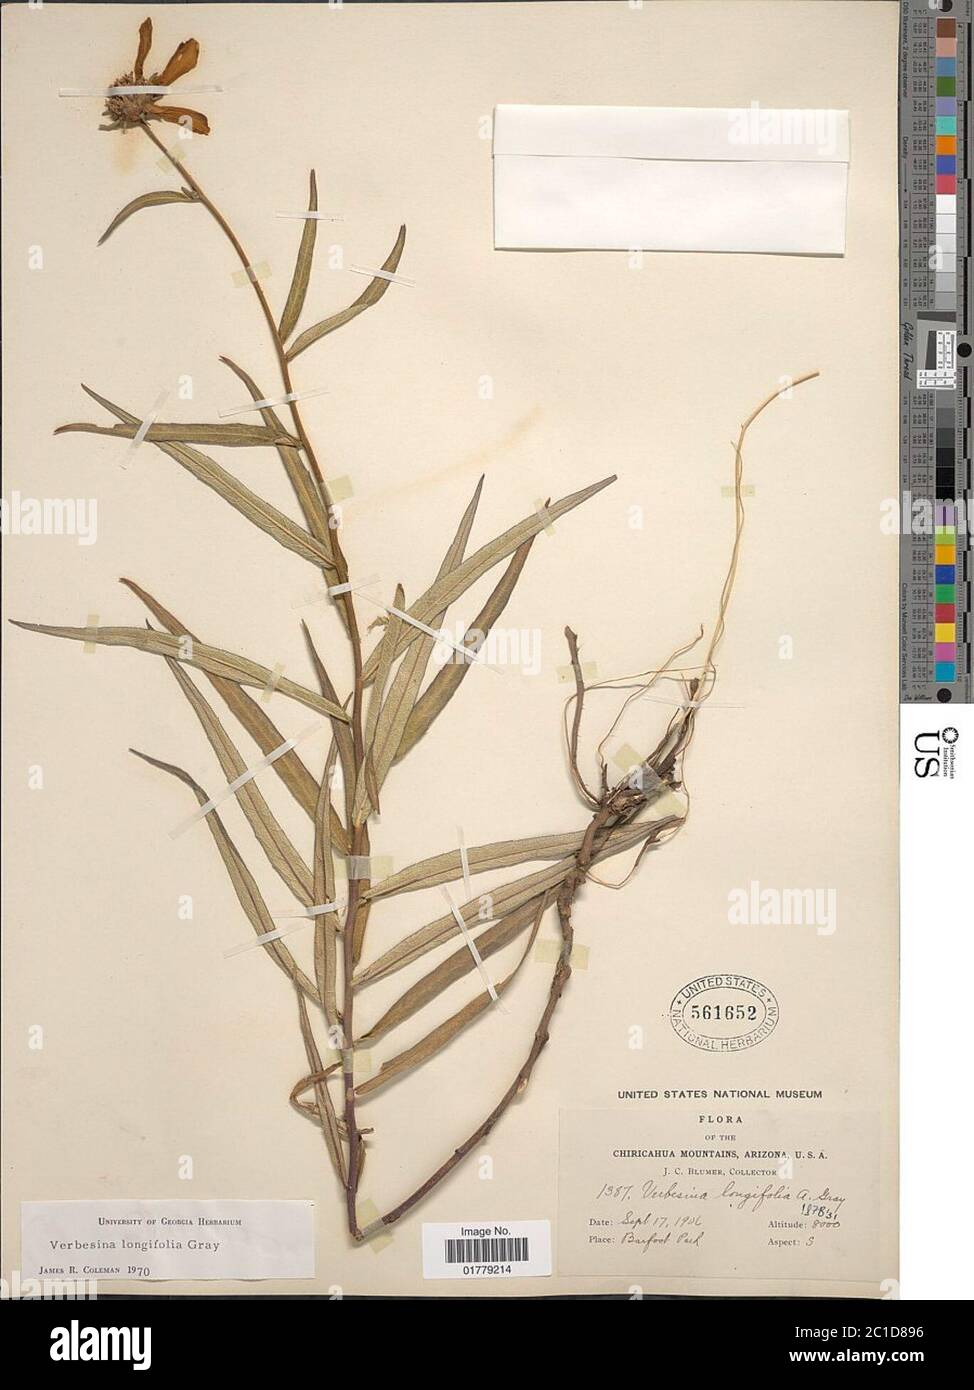 Verbesina longifolia A Gray Verbesina longifolia A Gray. Stock Photo